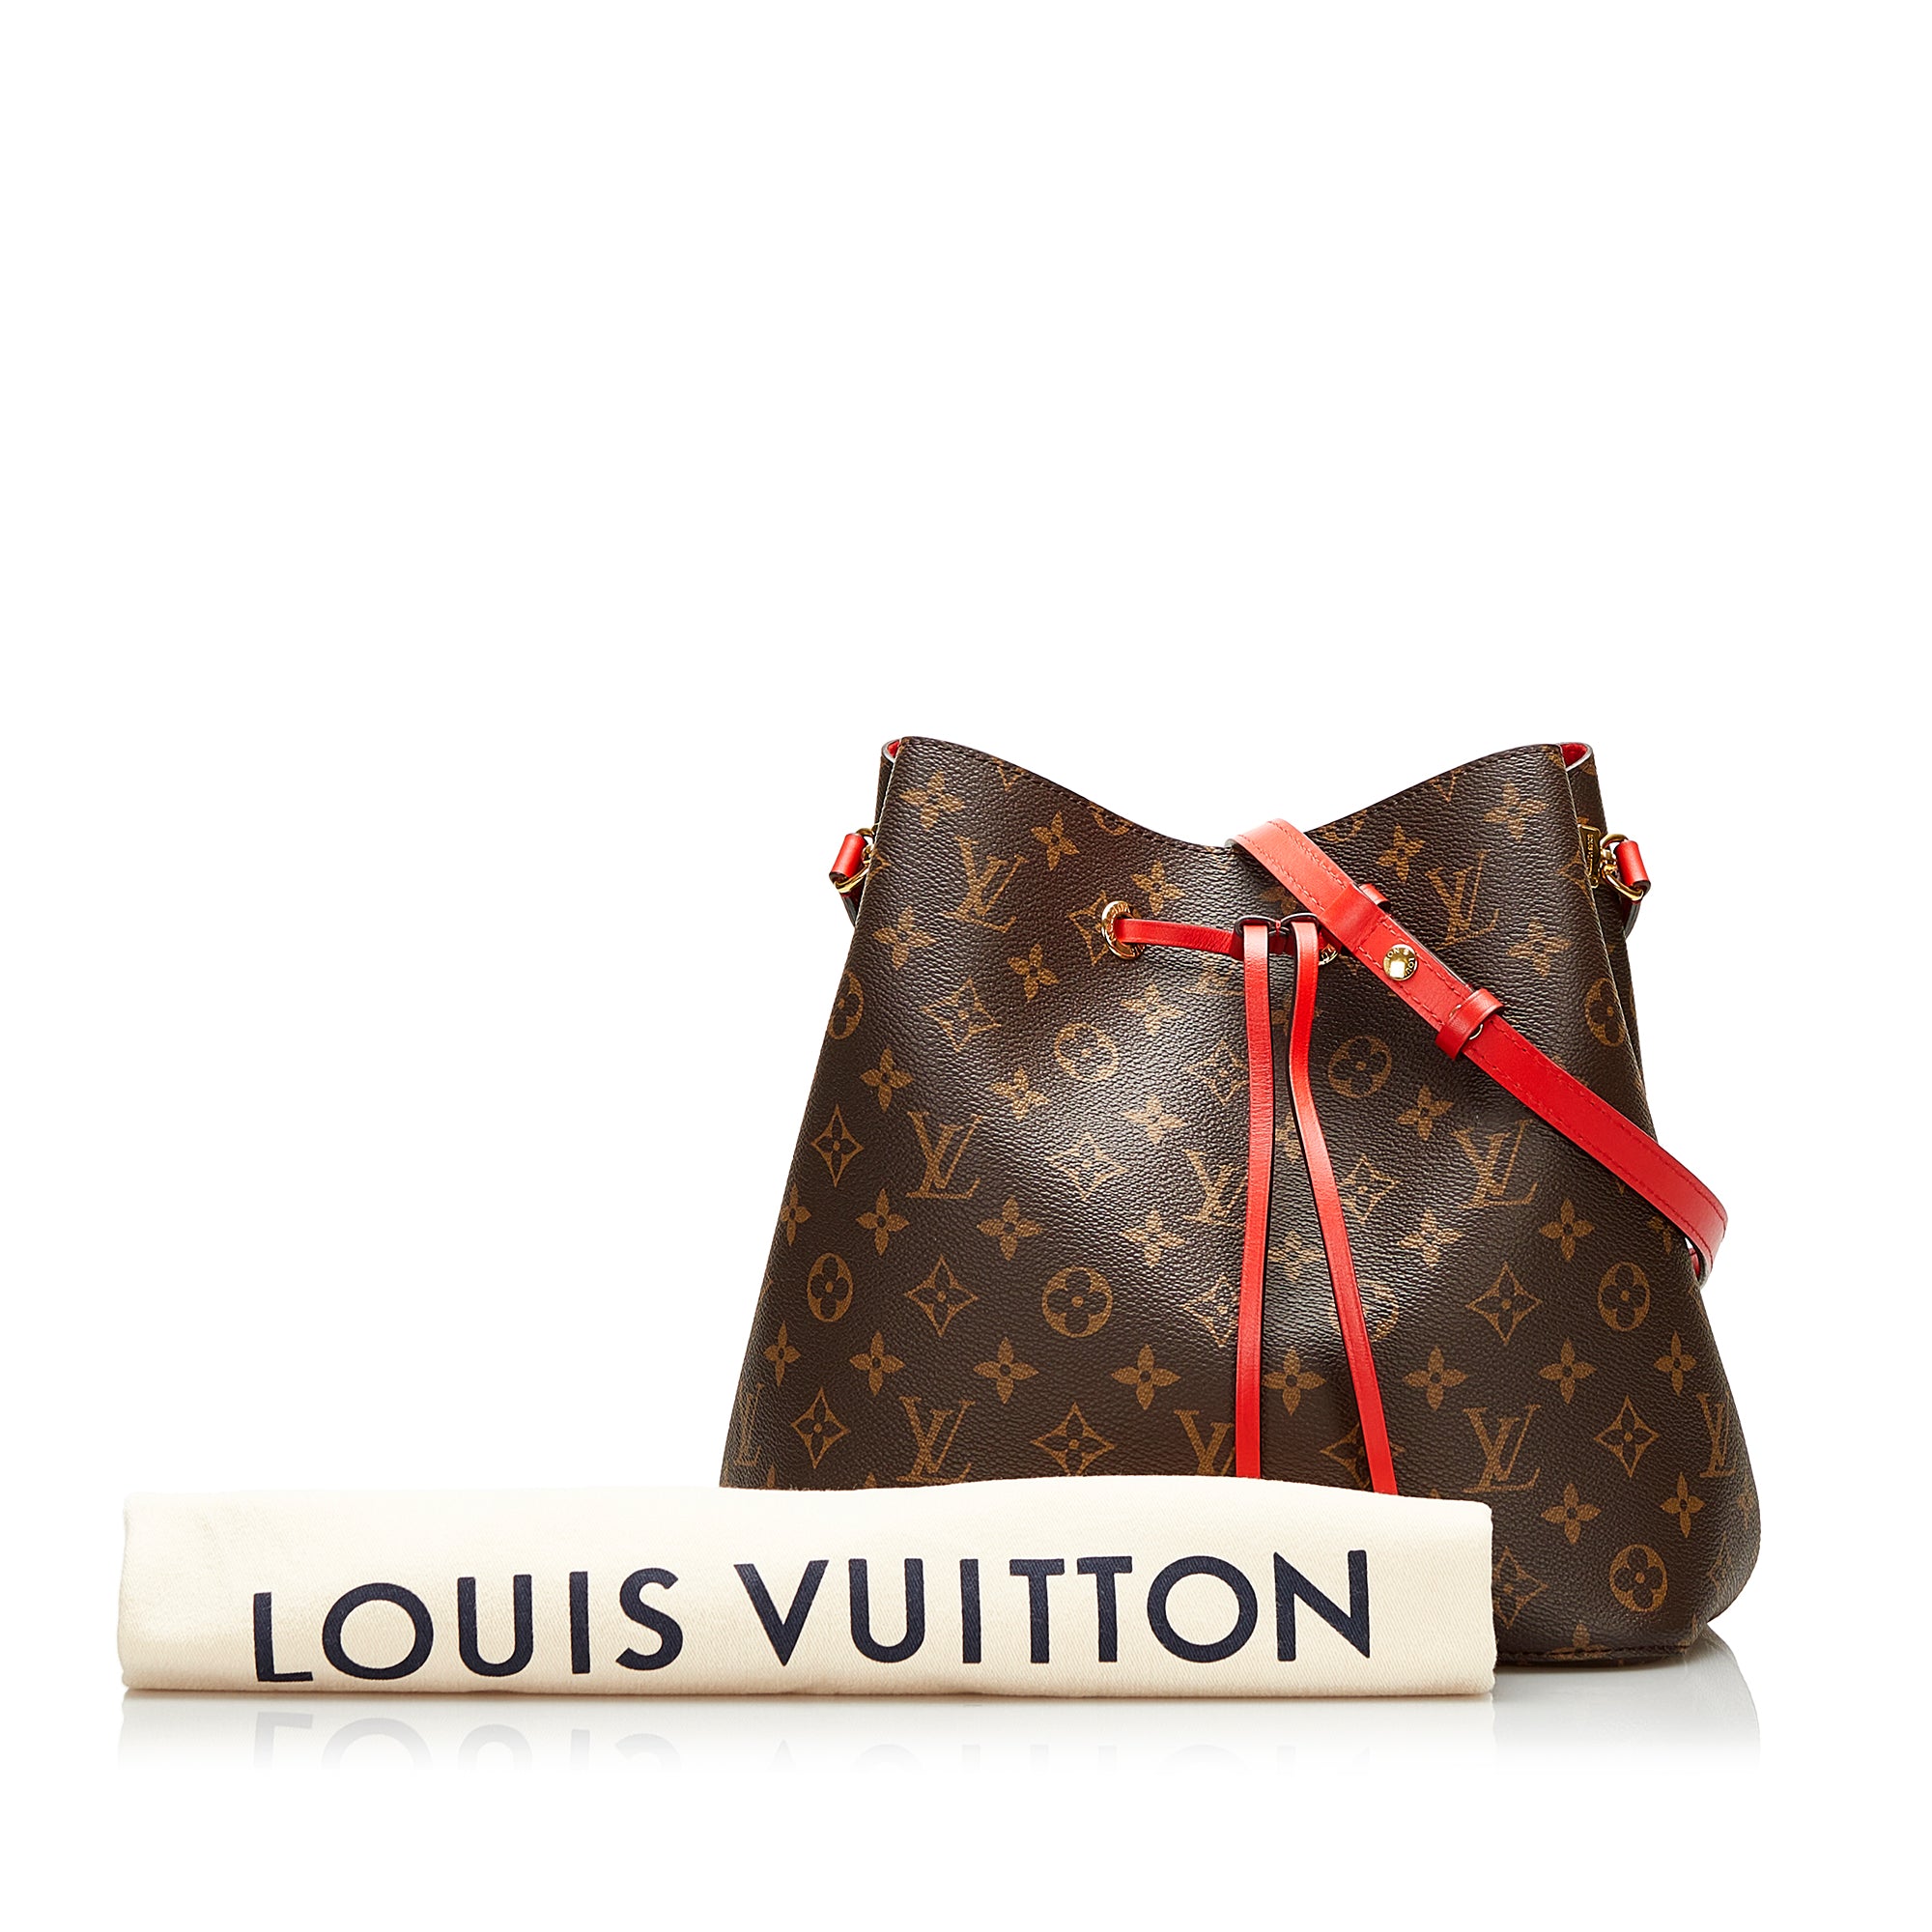 Louis Vuitton Monogram Canvas and Leather NeoNoe Bag Louis Vuitton